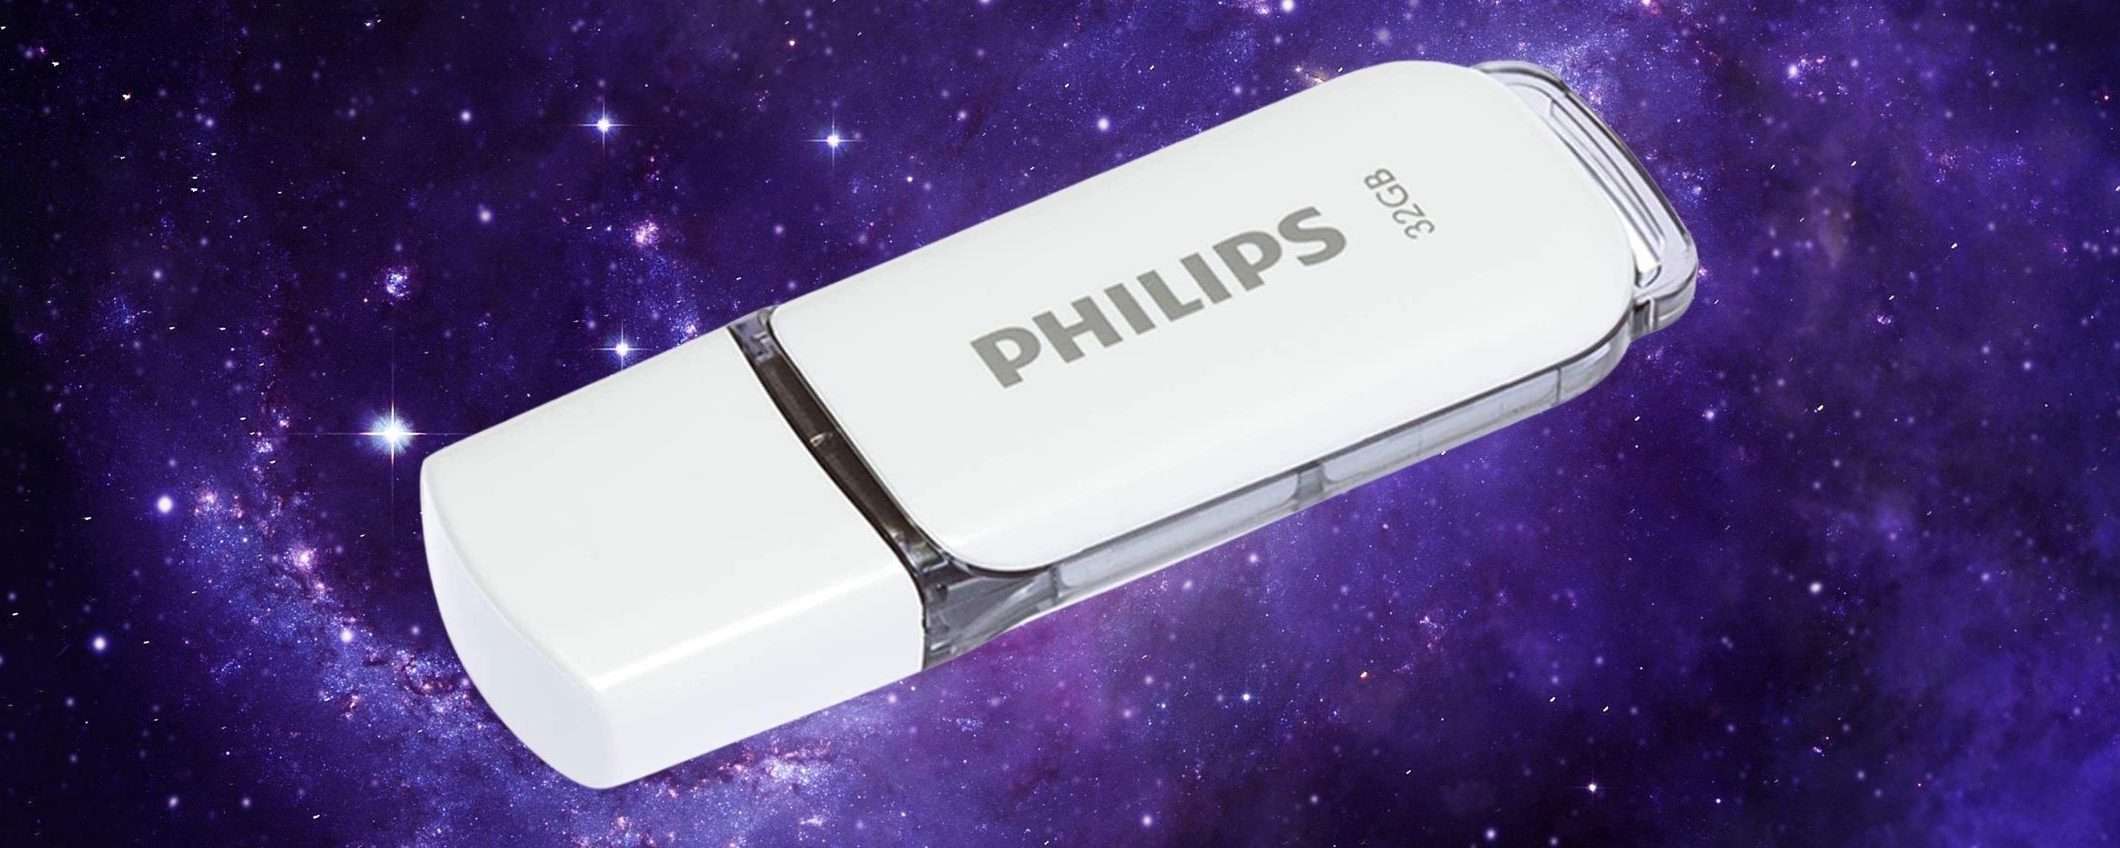 Chiavetta USB a 5 euro: PREZZACCIO per qualità Philips